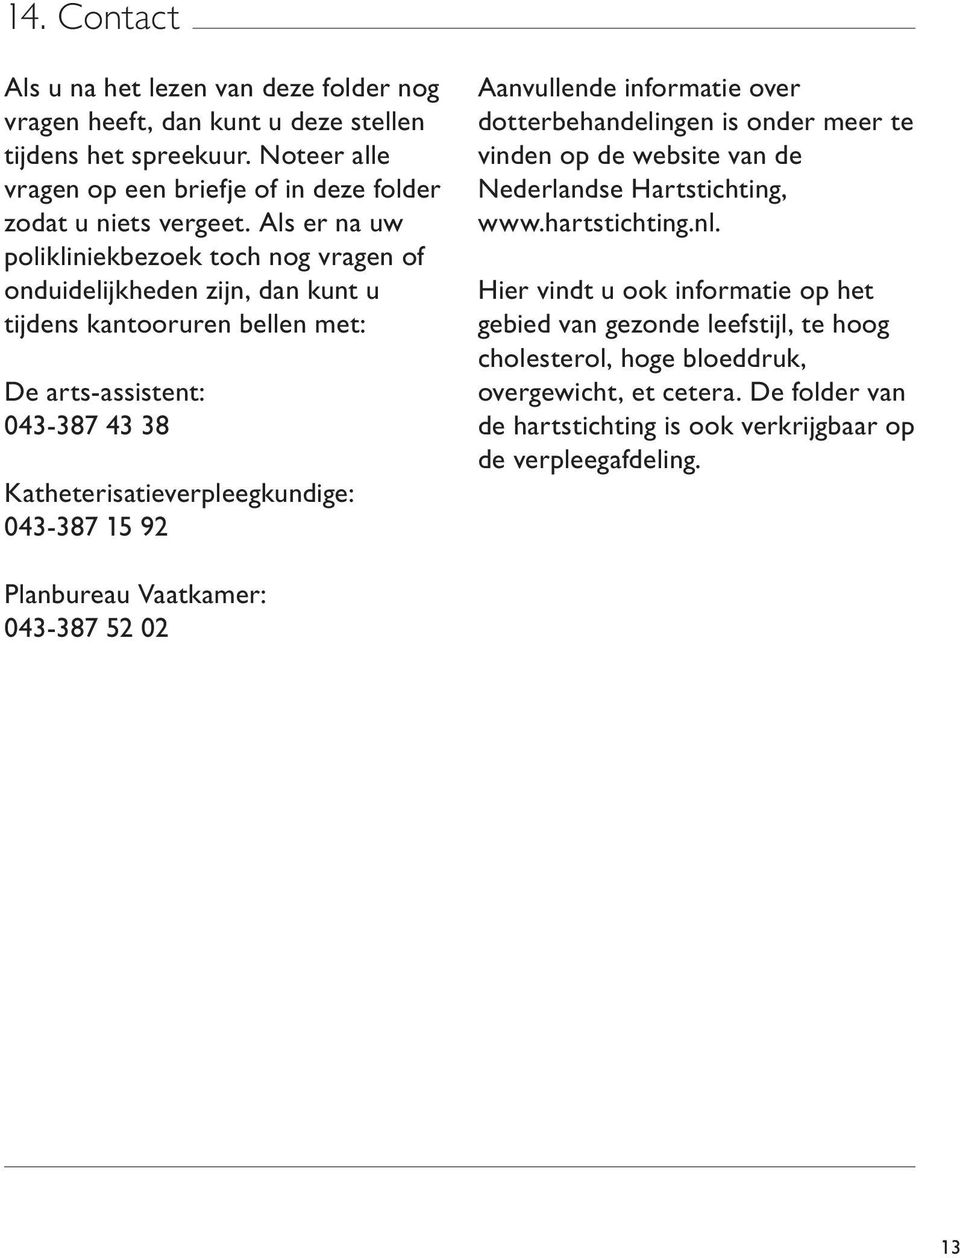 92 Aanvullende informatie over dotterbehandelingen is onder meer te vinden op de website van de Nederlandse Hartstichting, www.hartstichting.nl.